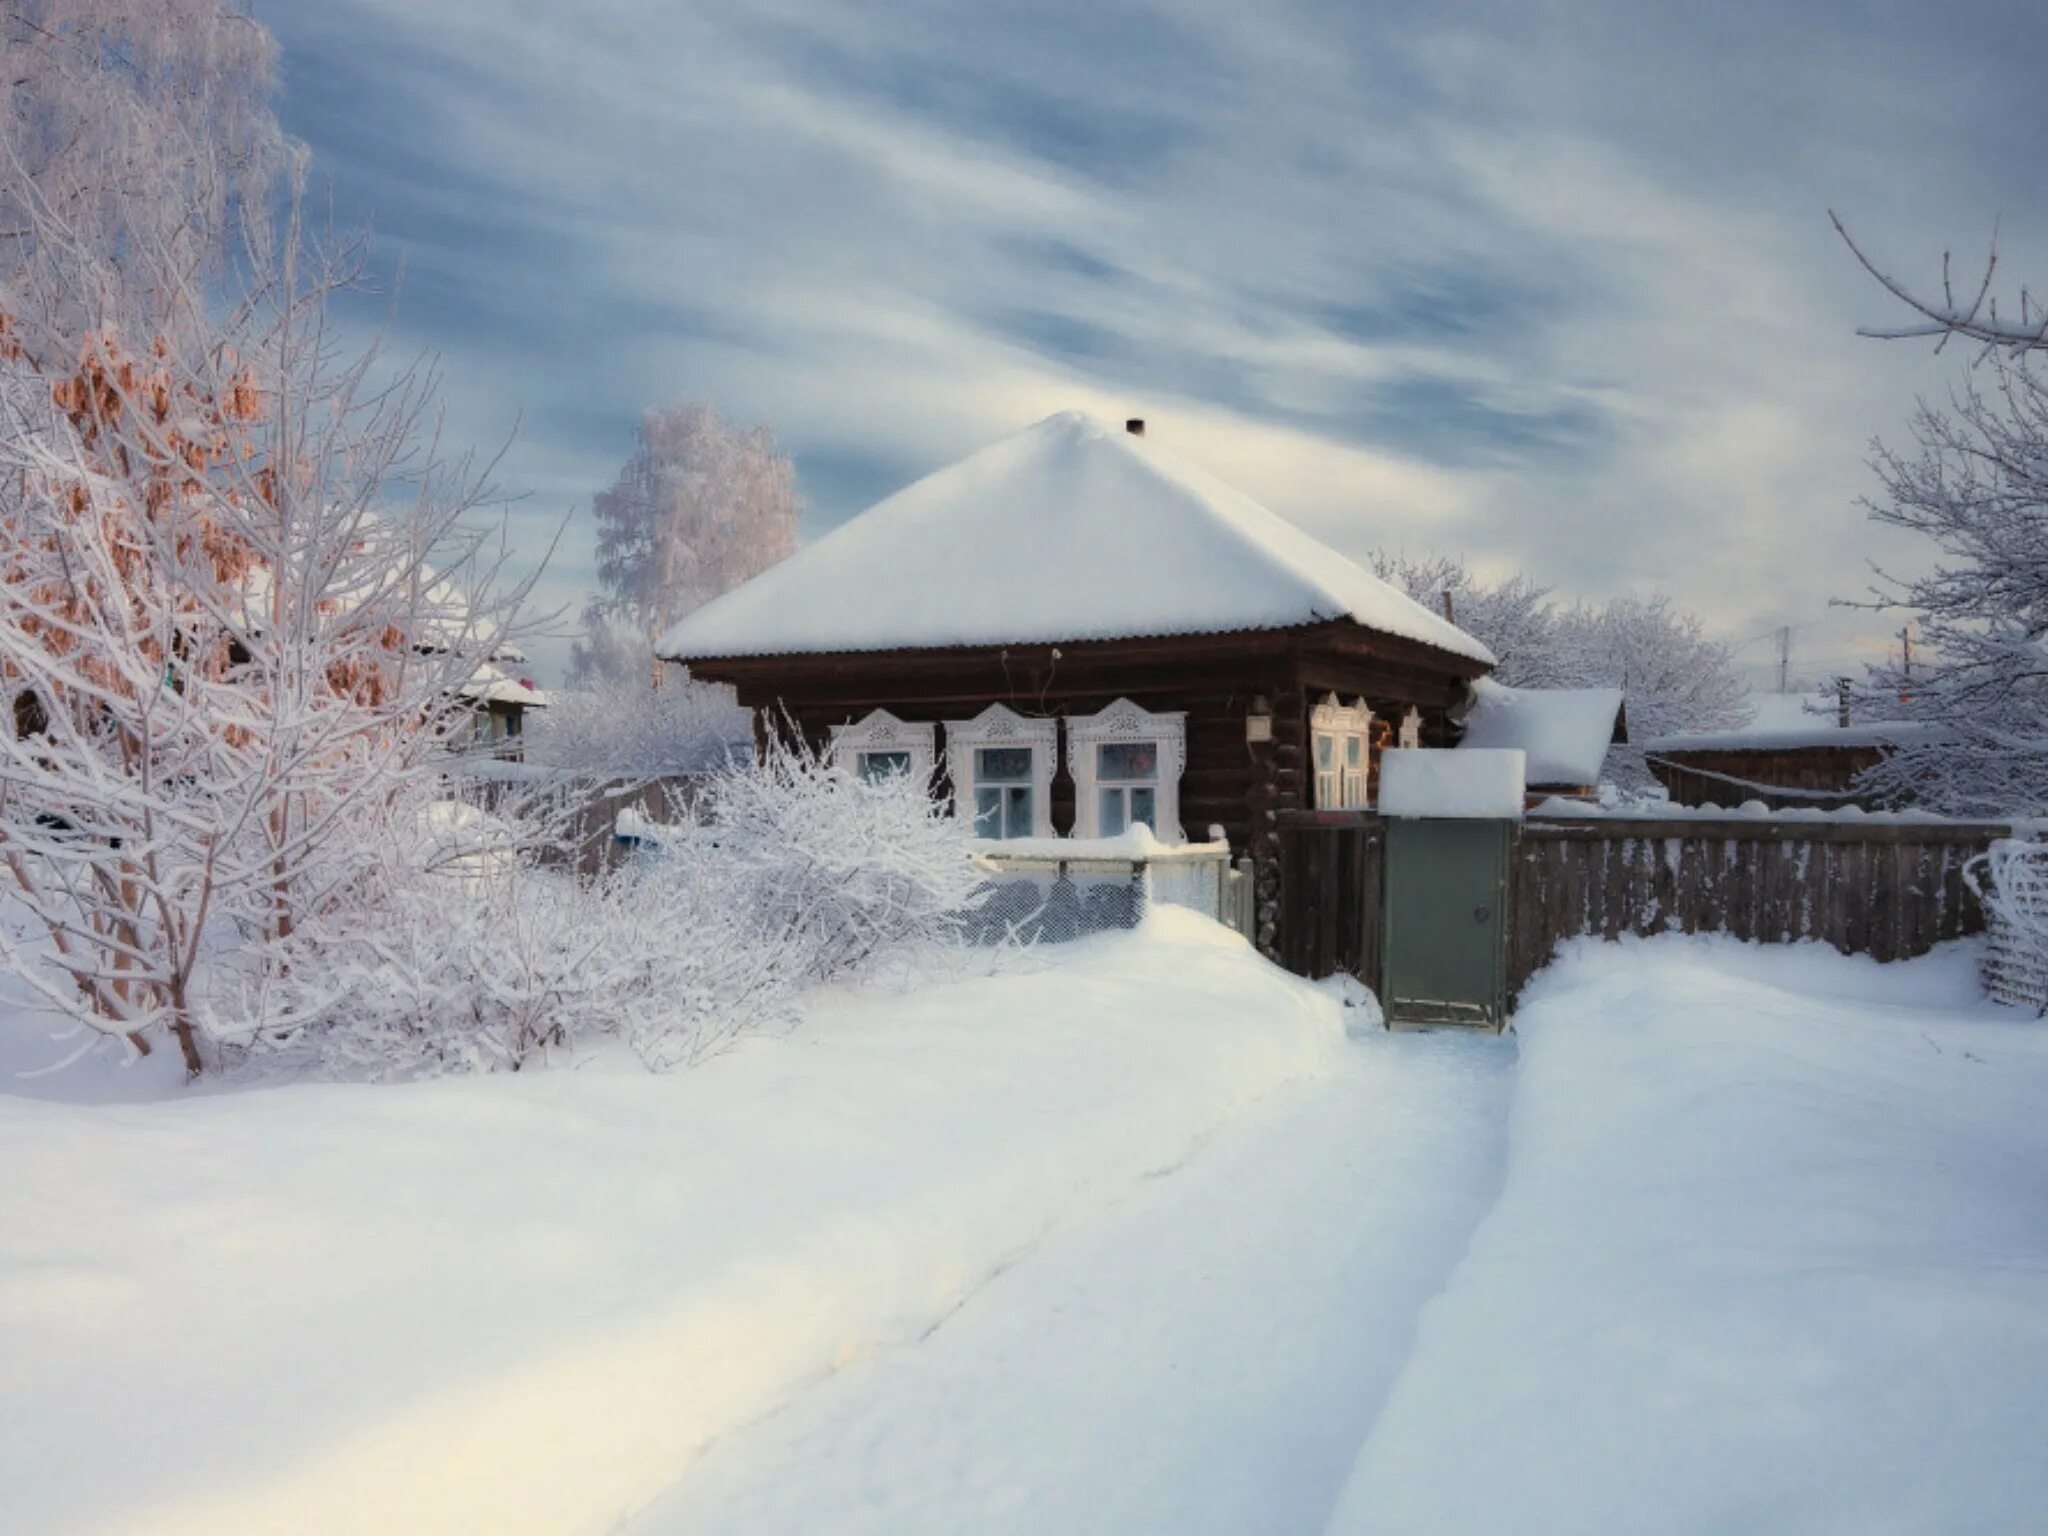 Зима в деревне. Зимняя деревня. Заснеженный двор в деревне. Деревенский домик в снегу. Деревня сугробы